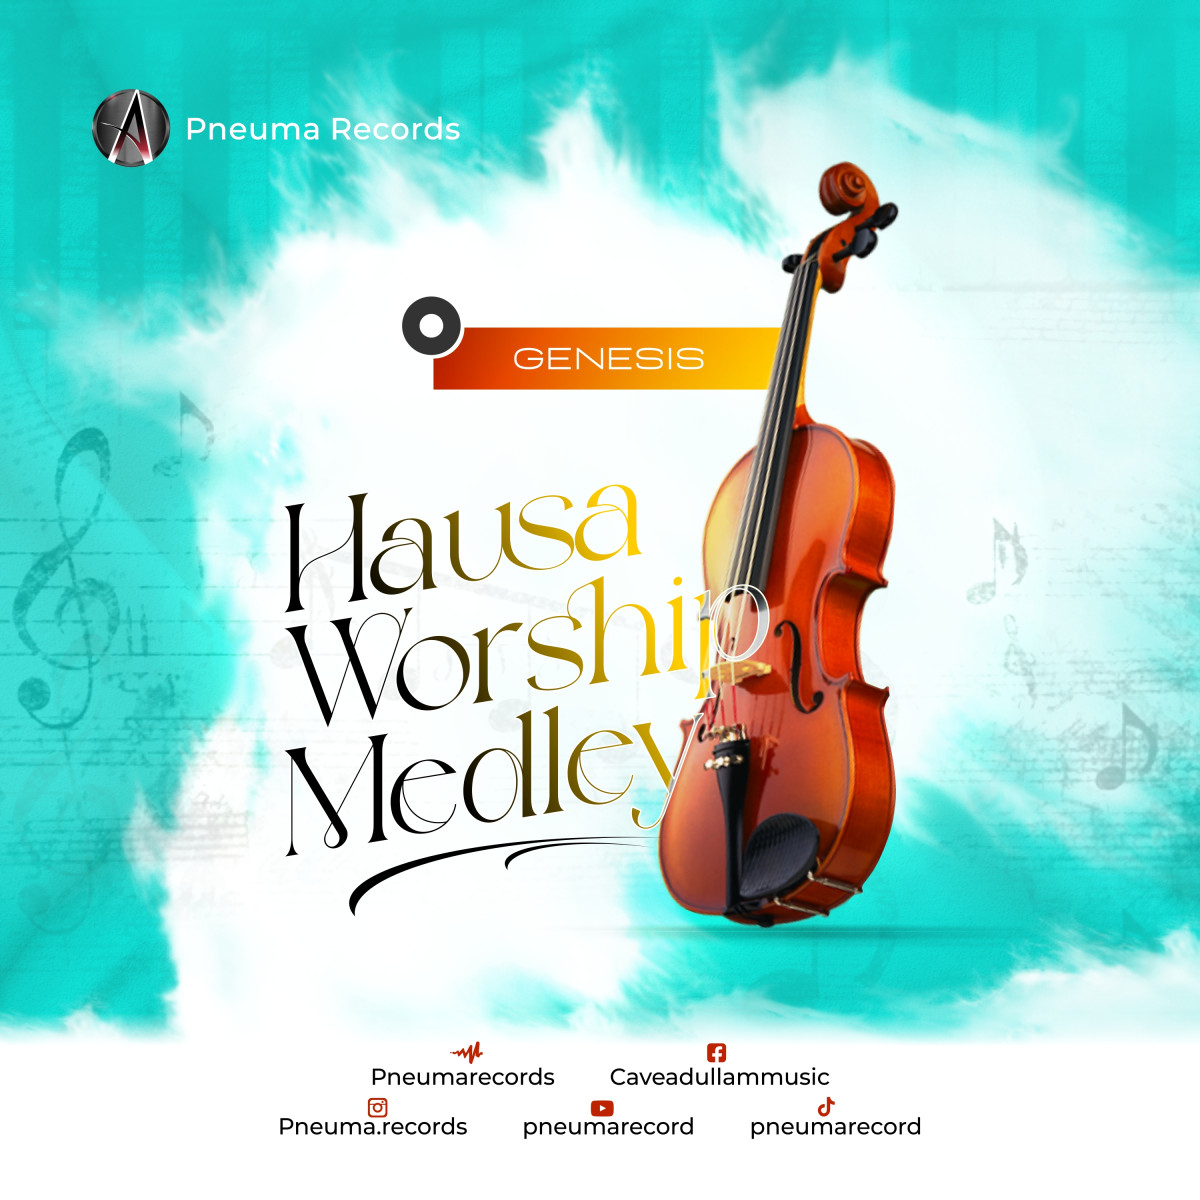 Hausa worship medley